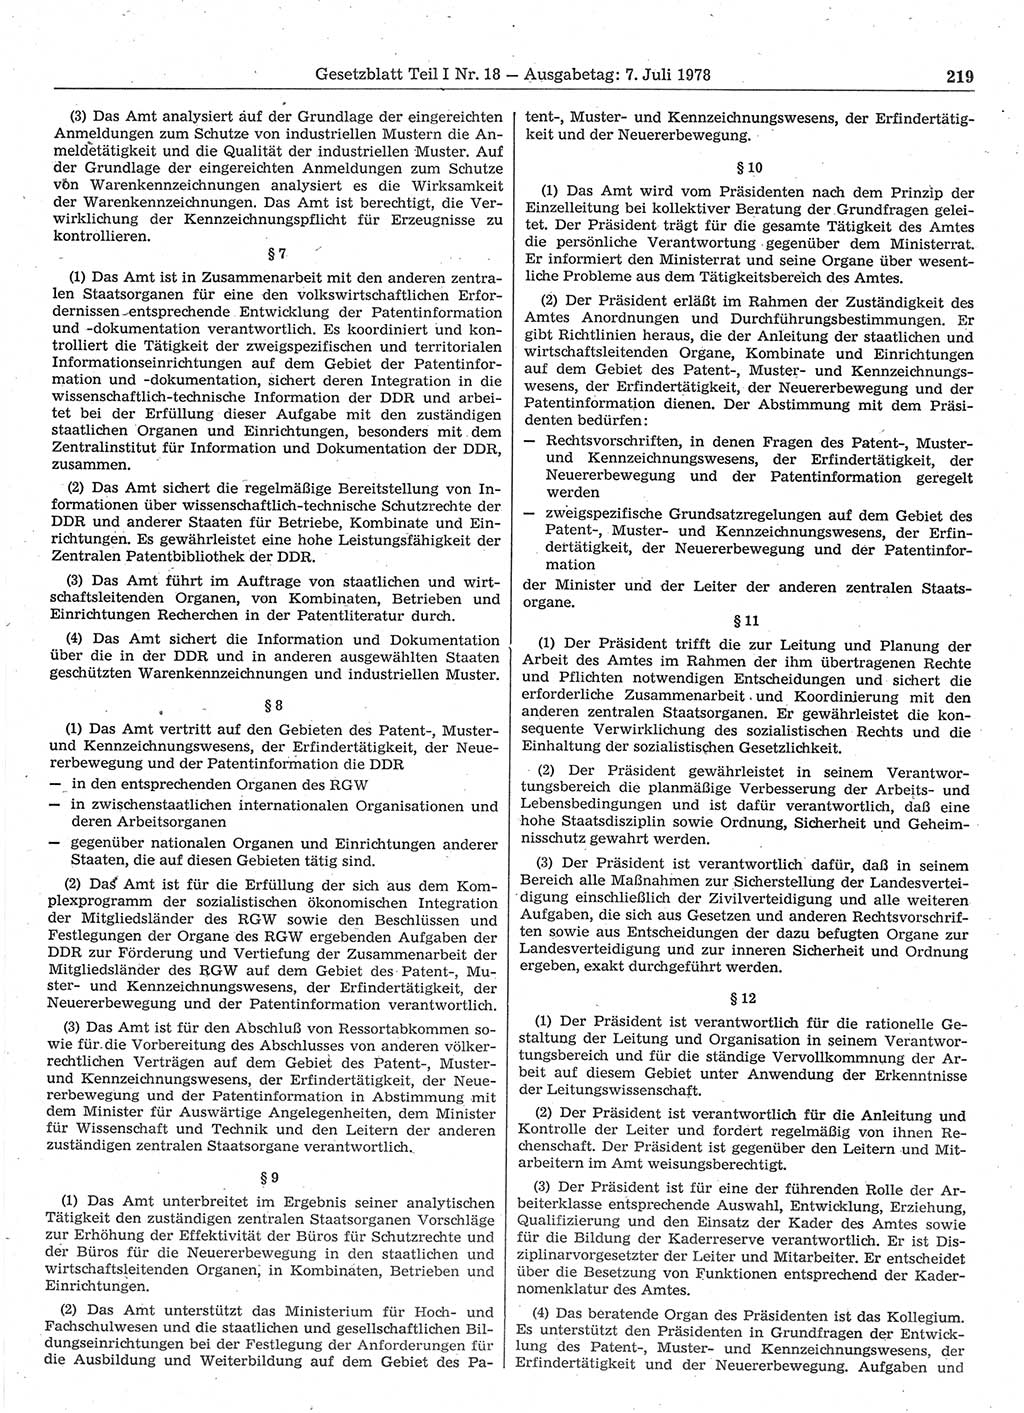 Gesetzblatt (GBl.) der Deutschen Demokratischen Republik (DDR) Teil Ⅰ 1978, Seite 219 (GBl. DDR Ⅰ 1978, S. 219)